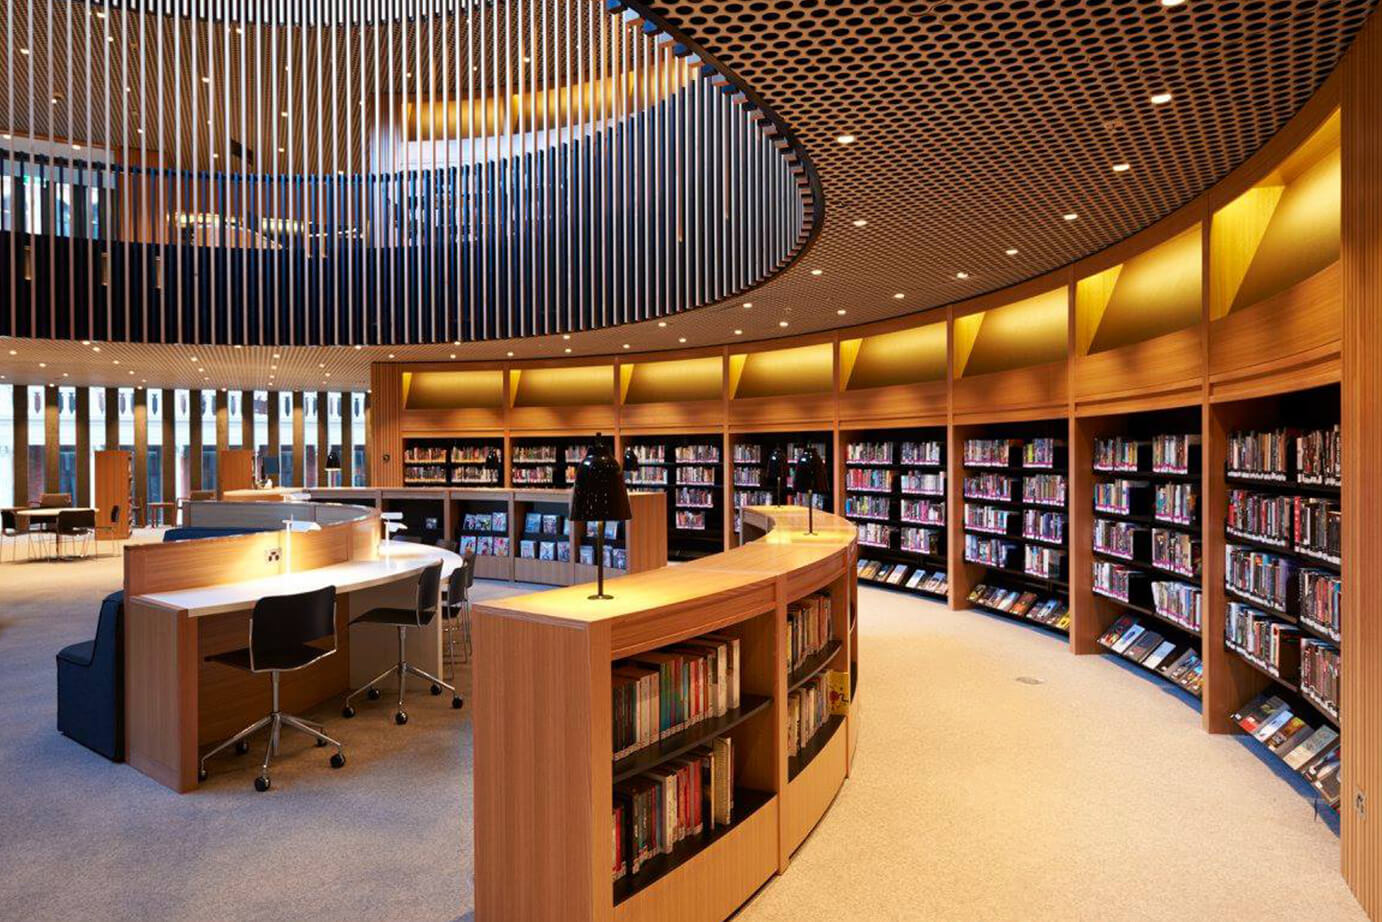 Library rld. Библиотека Японии читальный зал. Йельский университет библиотека. Современная библиотека. Интерьер современной библиотеки.